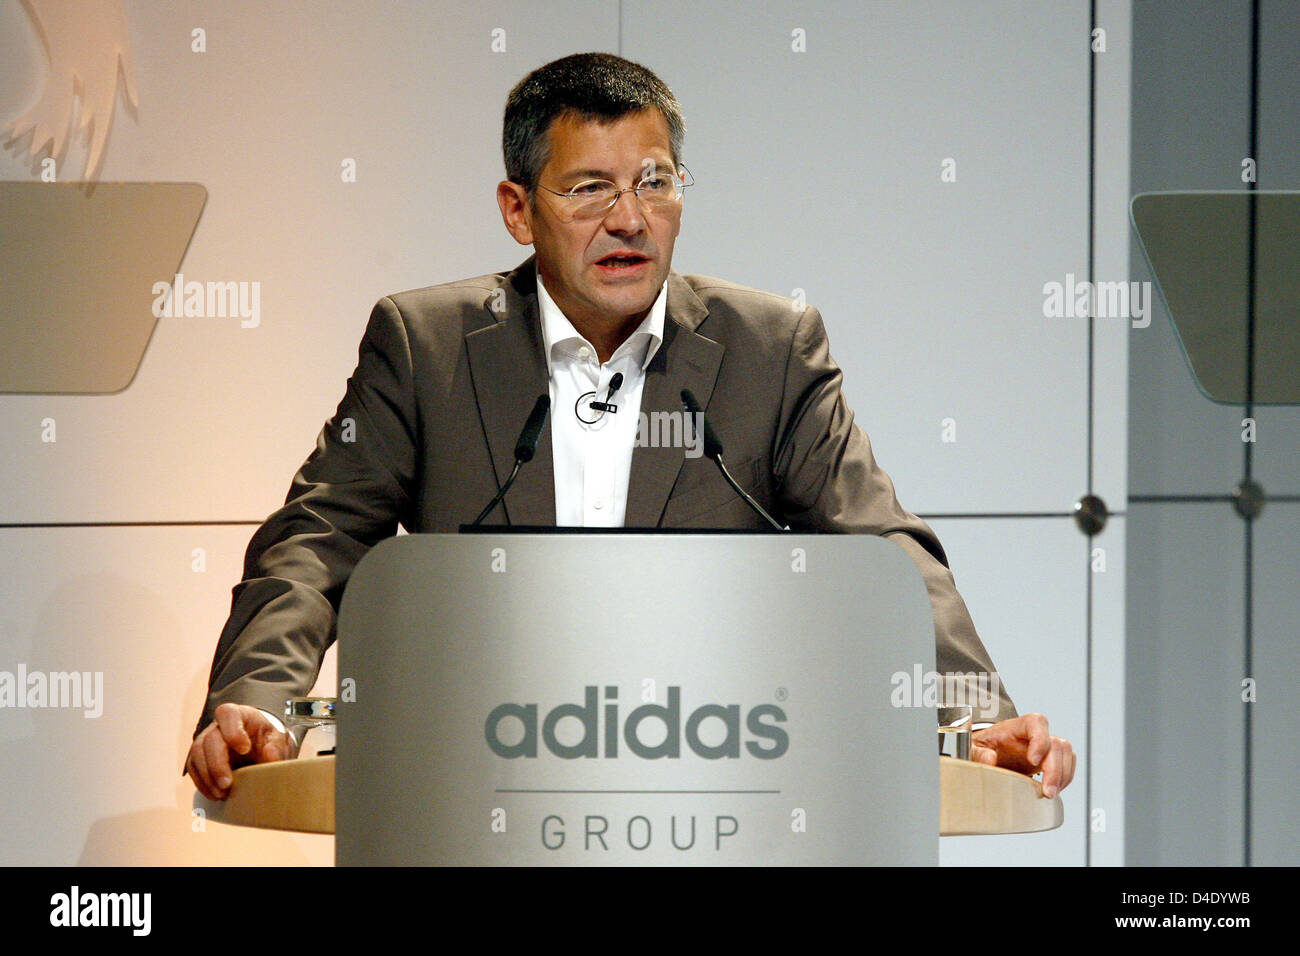 Adidas-CEO Herbert Hainer pronuncia un discurso en la reunión general de la empresa Fürth, Alemania, 08 de mayo de 2008. Hainer confirmó su objetivo para hacer que la marca alemana